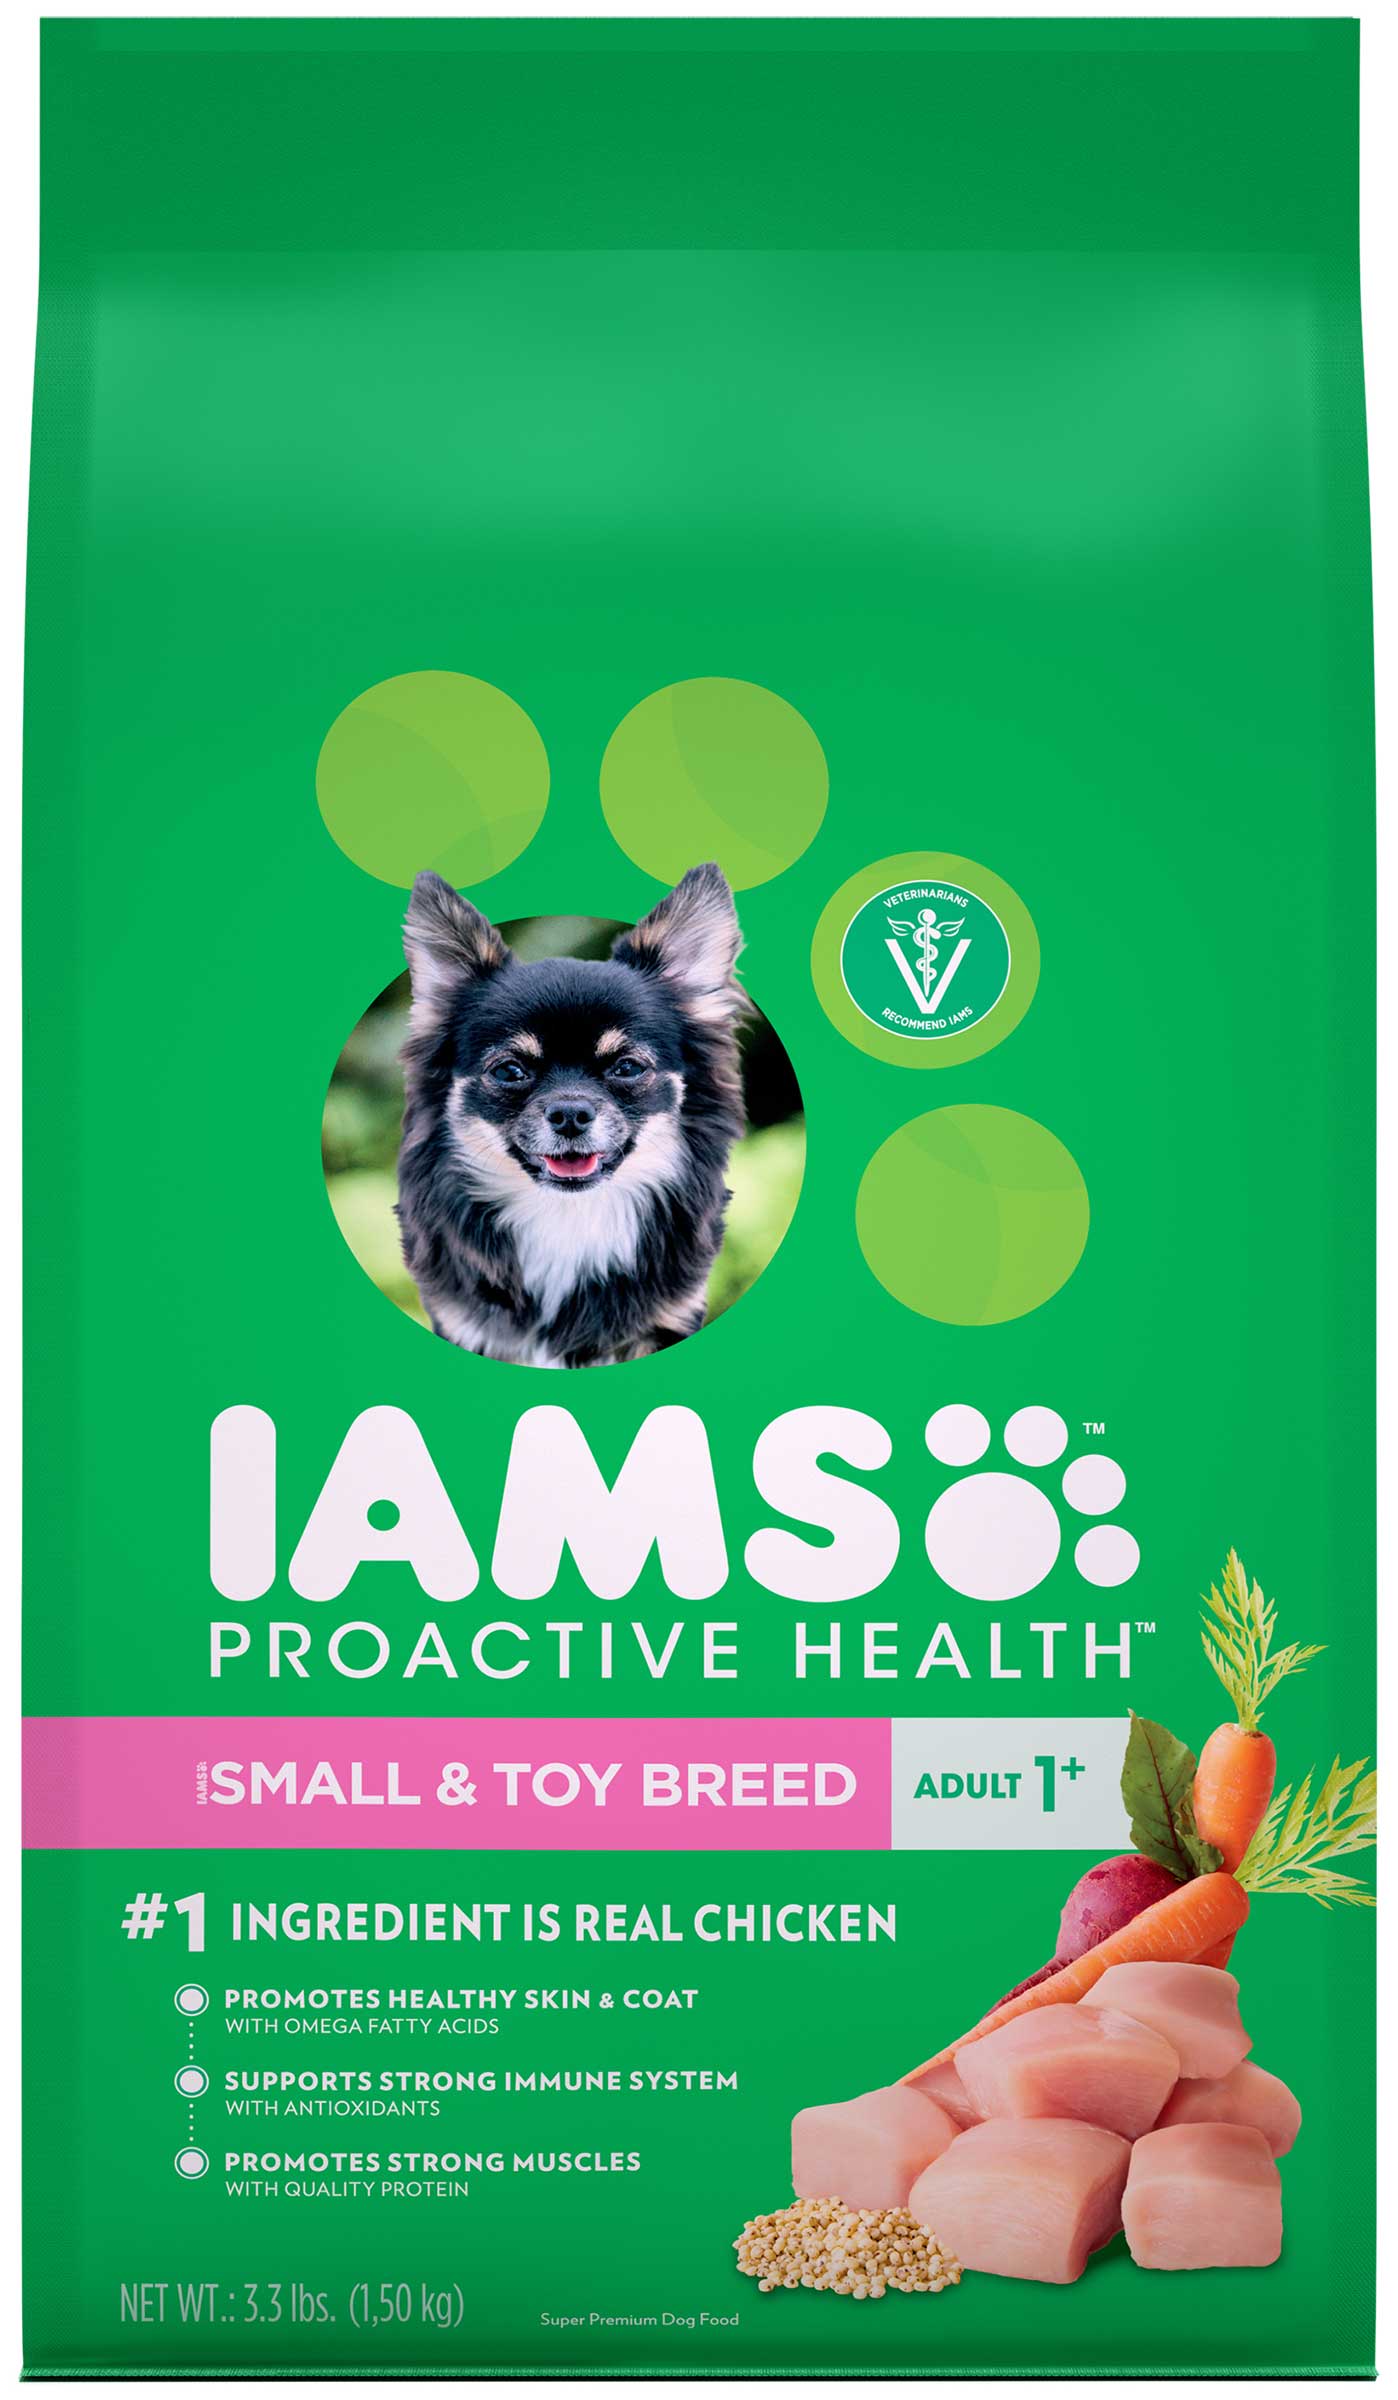 愛慕思 健康優活 迷你/小型成犬 (雞肉)
Iams Proactive Health™ Small & Toy Breed